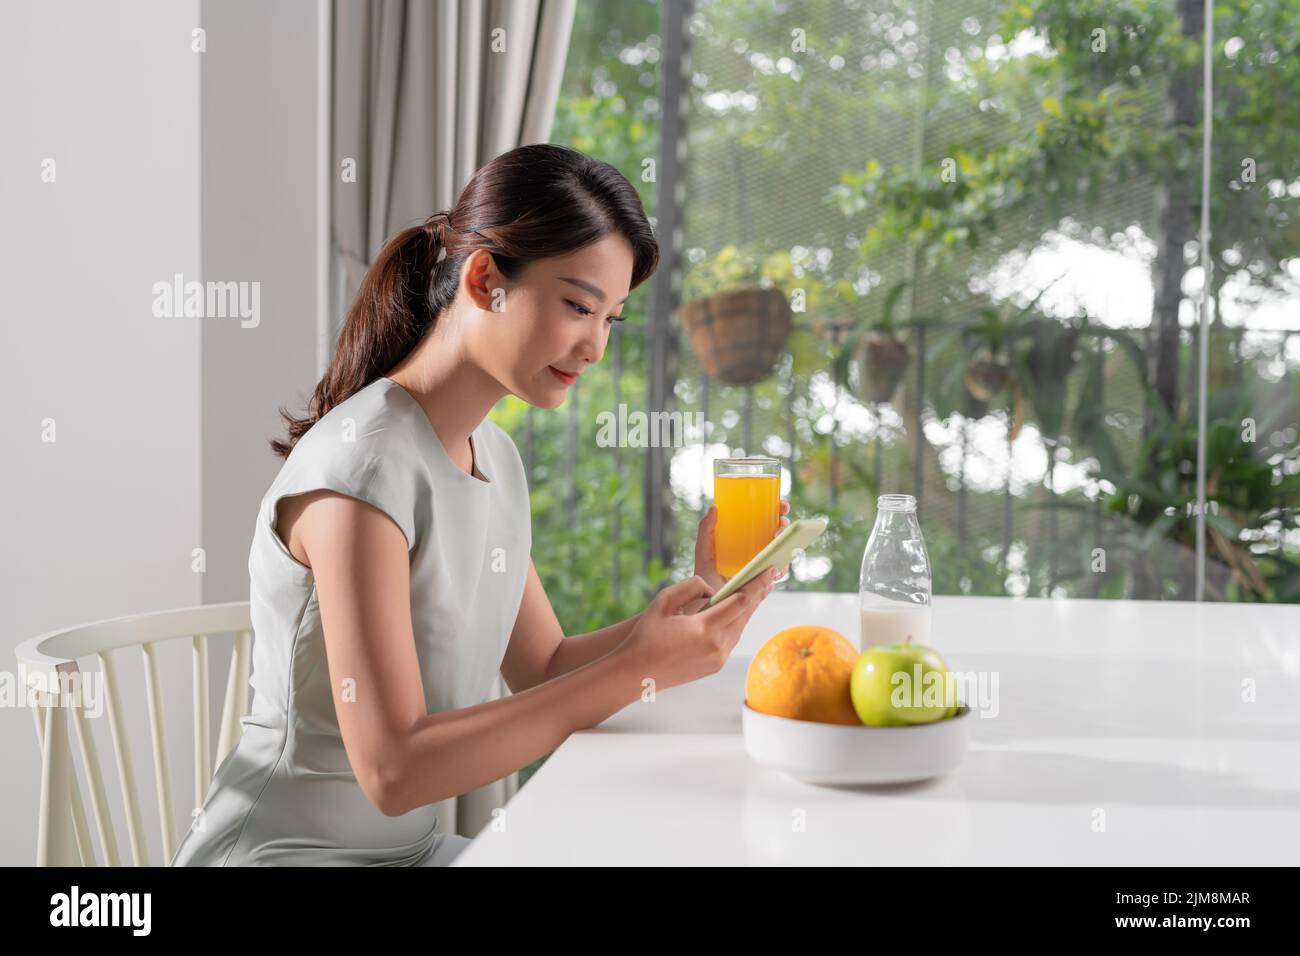 Mujer sonriente y bonita mirando al teléfono móvil y sosteniendo un vaso de zumo de naranja mientras desayunaba Foto de stock